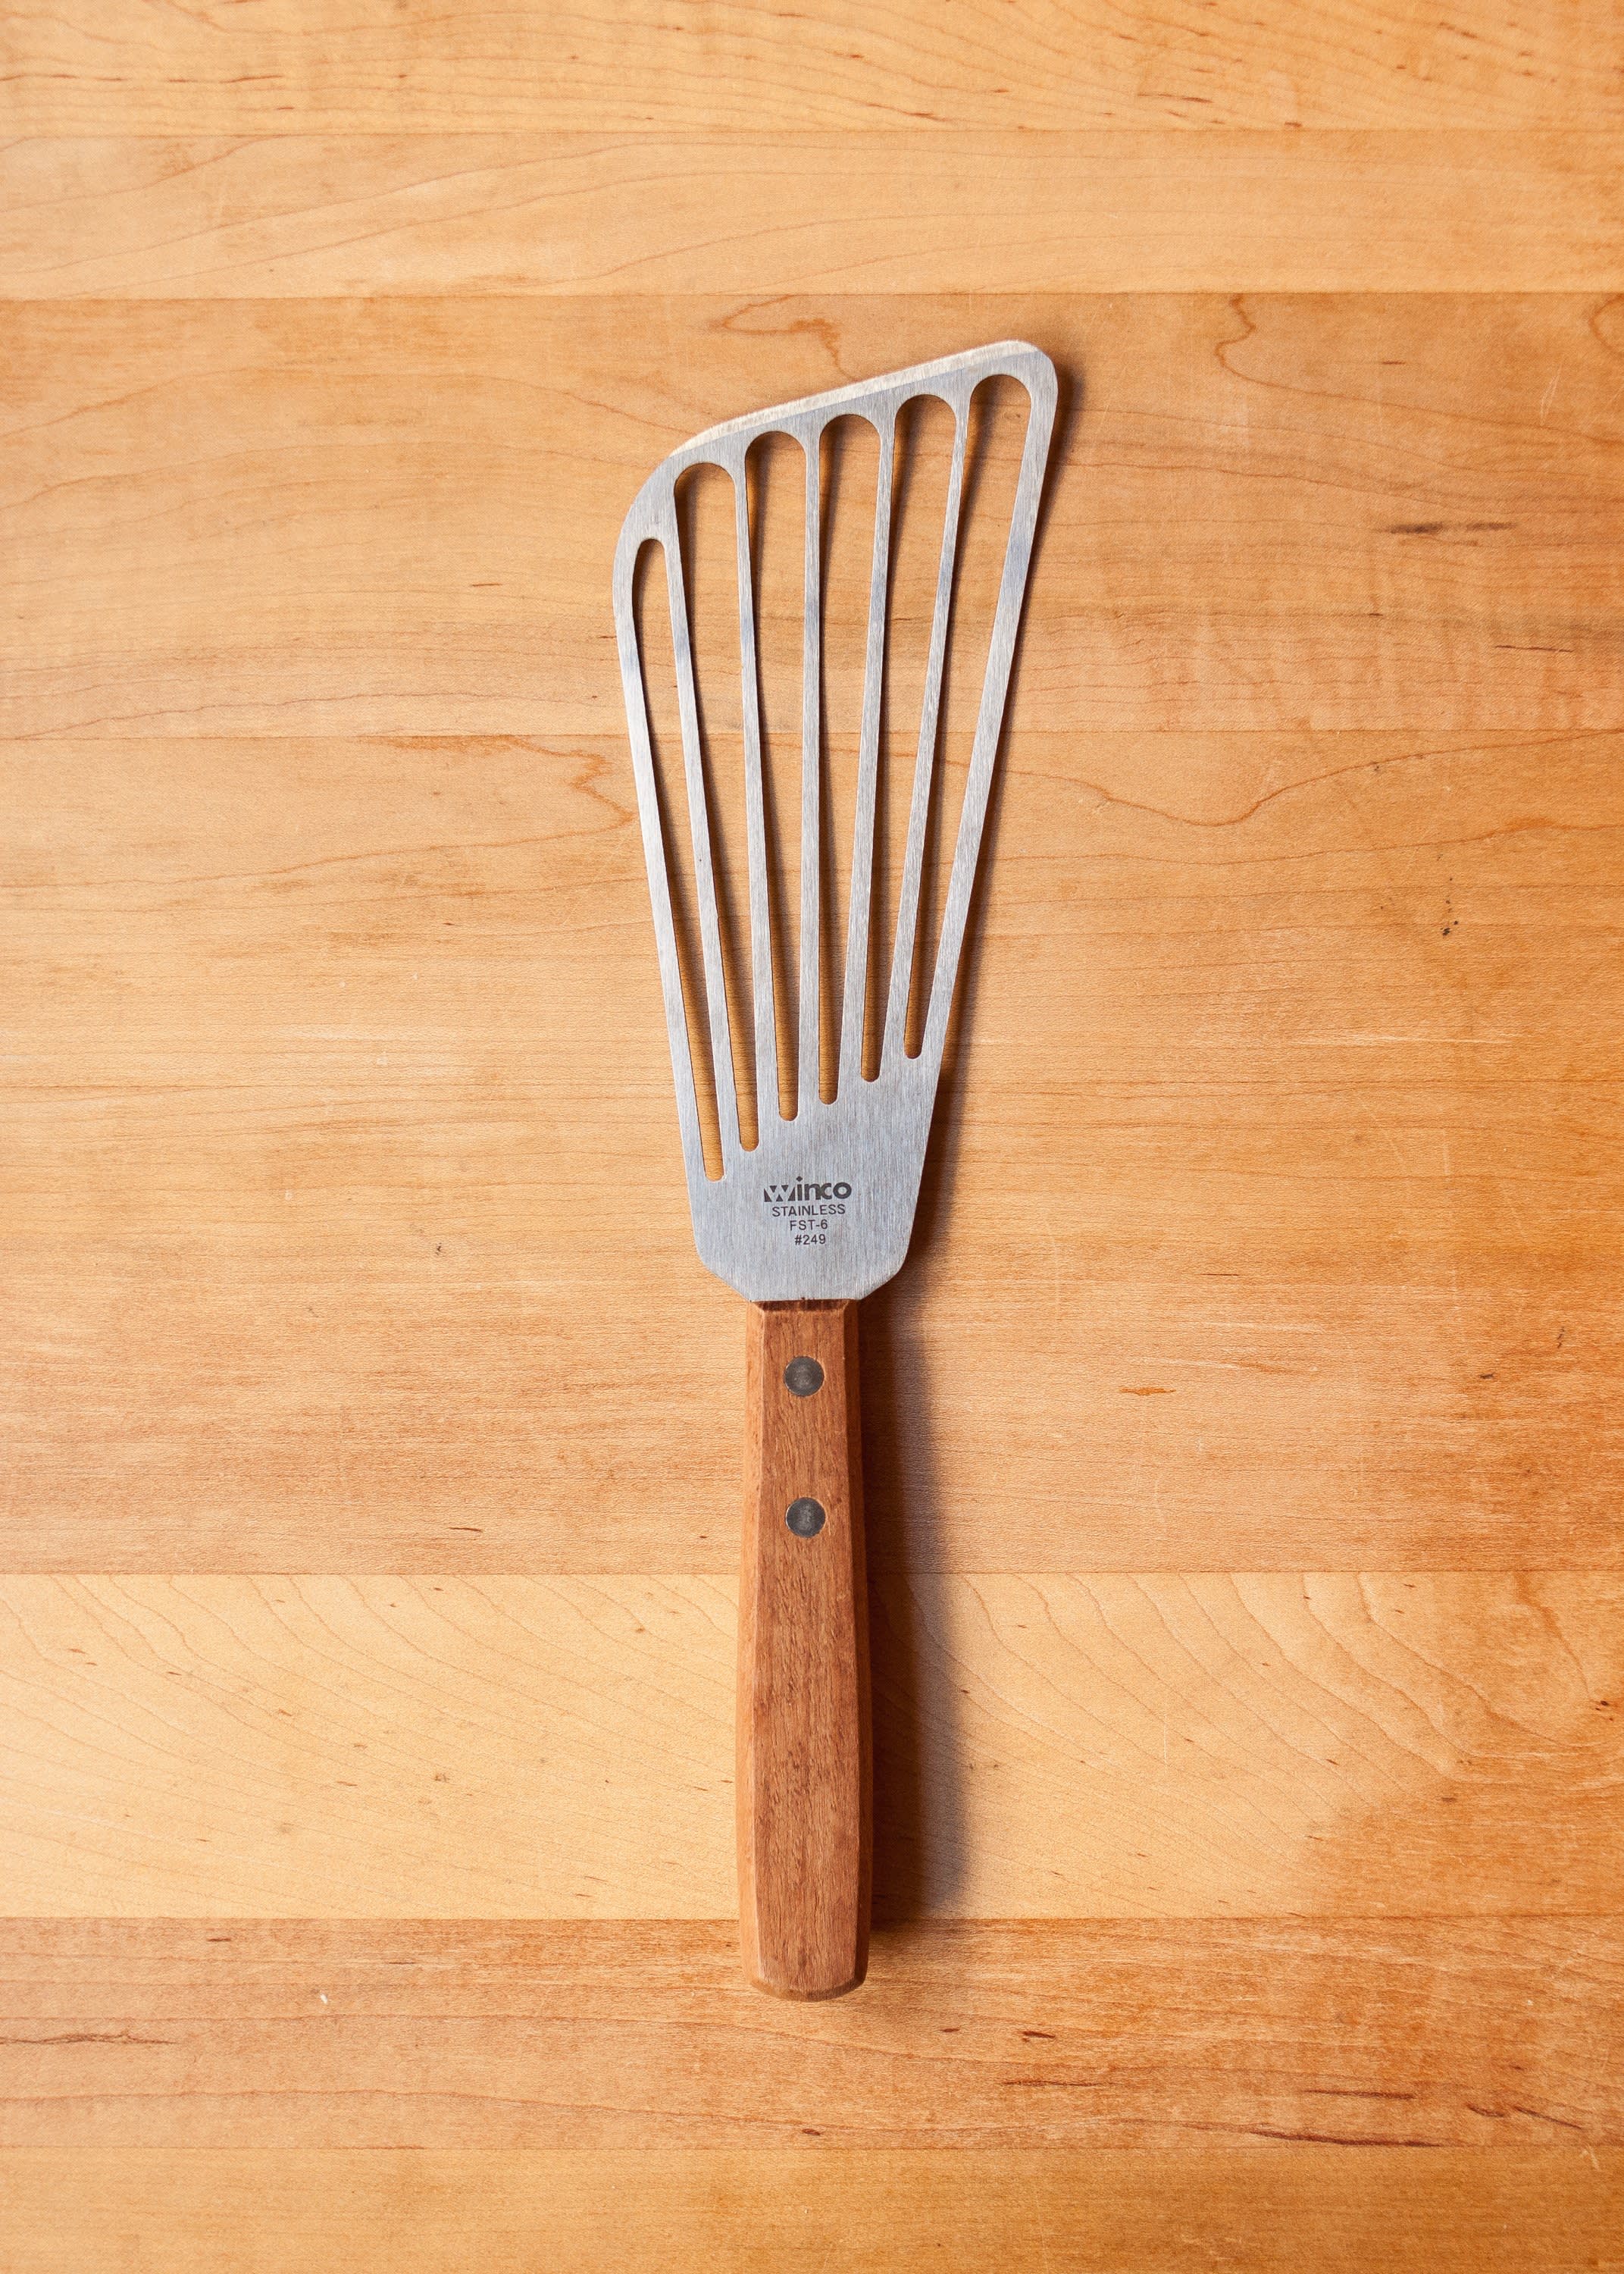 kinds of spatula